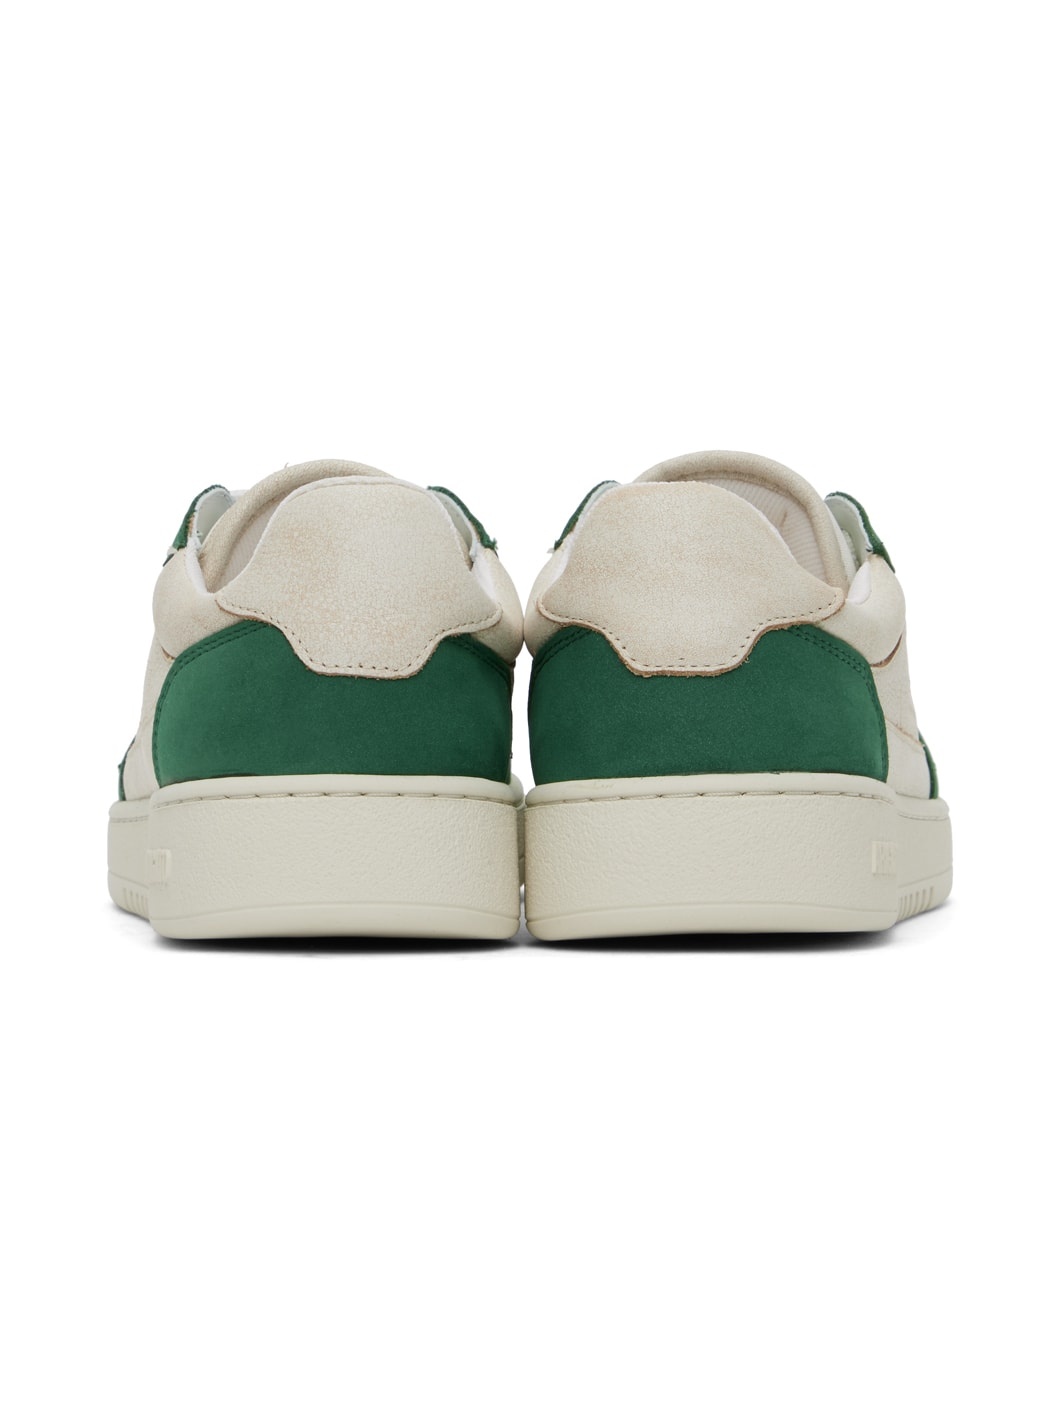 Beige & Green Dice Lo Sneakers - 2